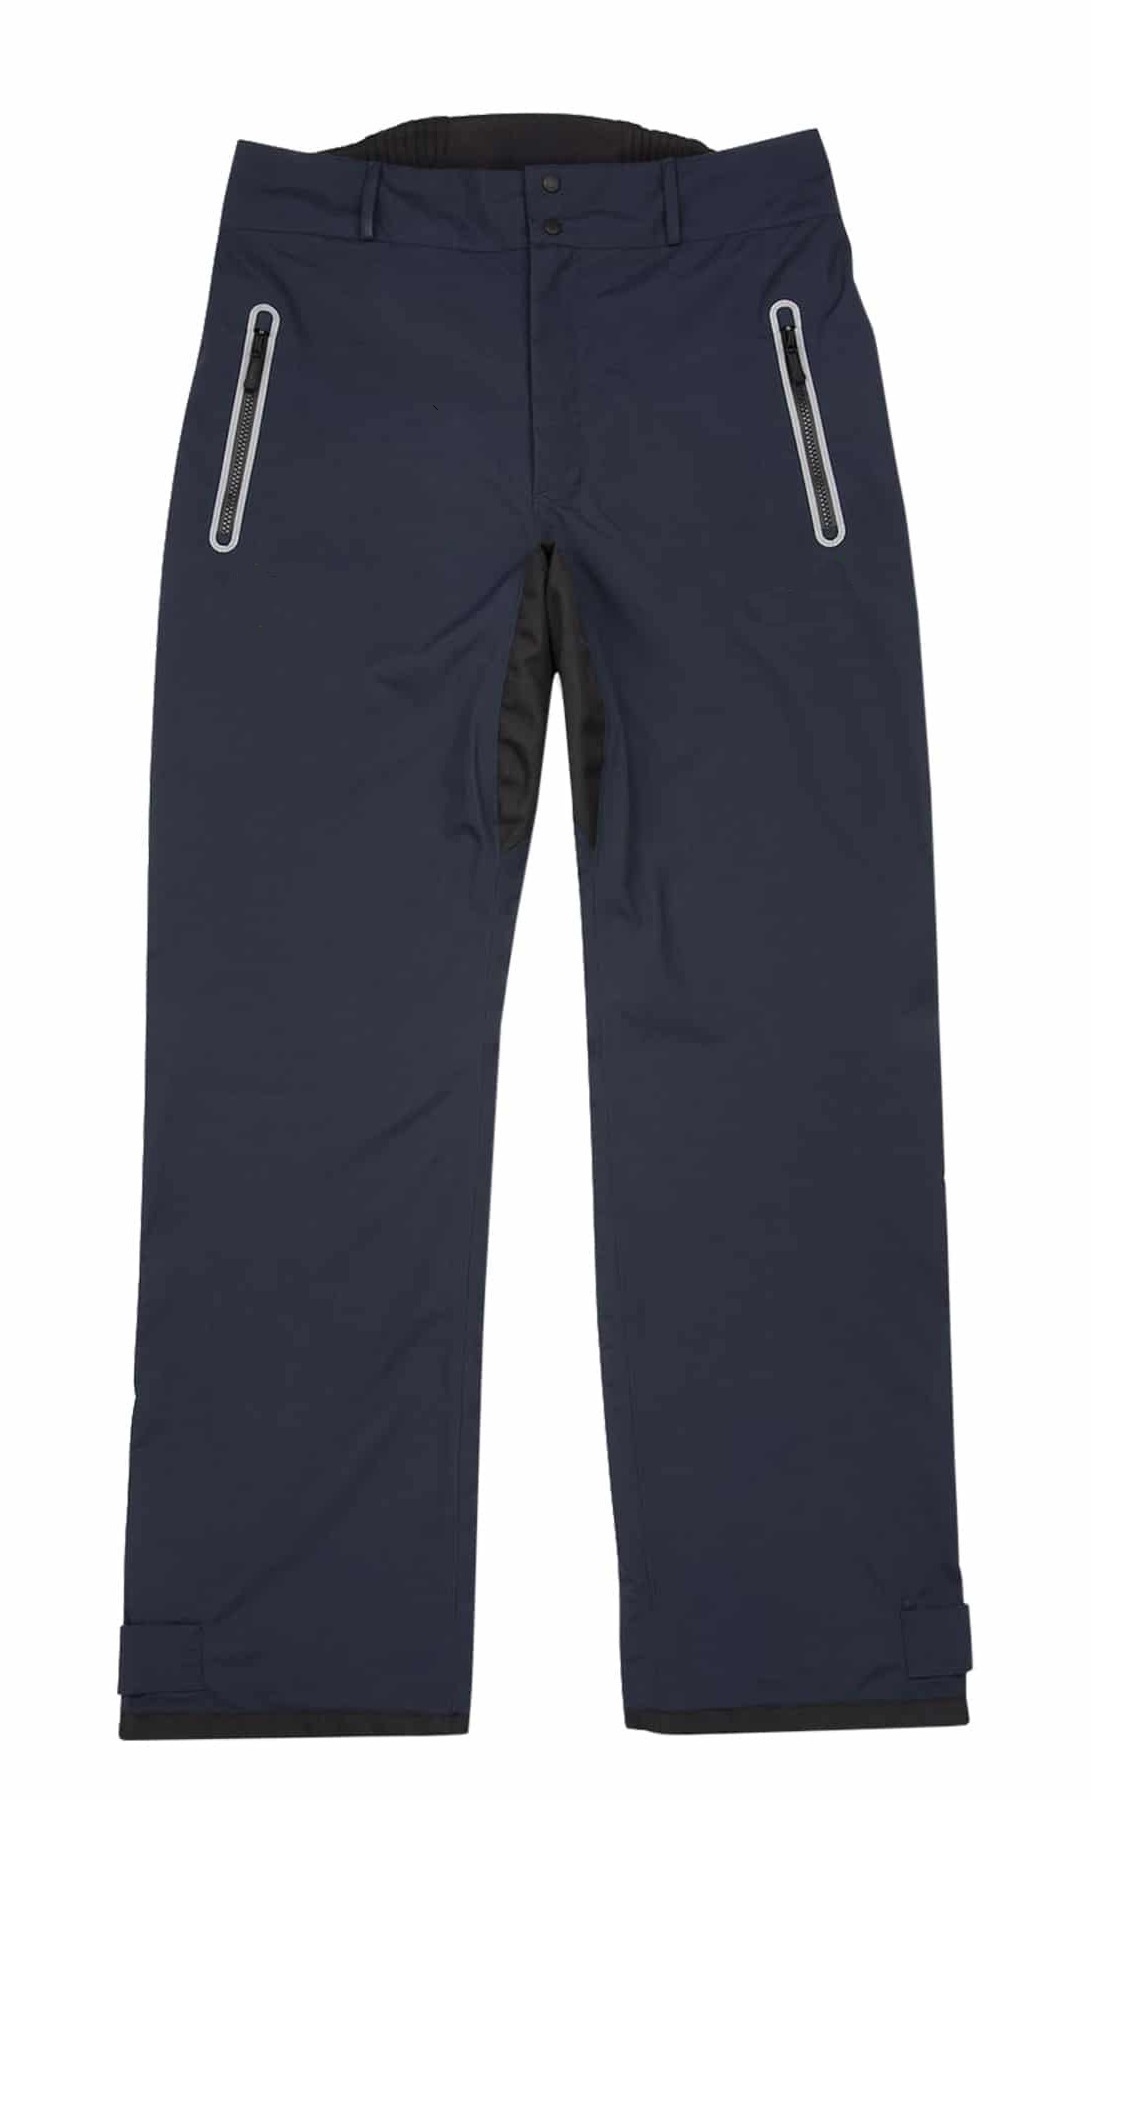 Men's Trousers Navy-Beijing keynes import and export co., Ltd